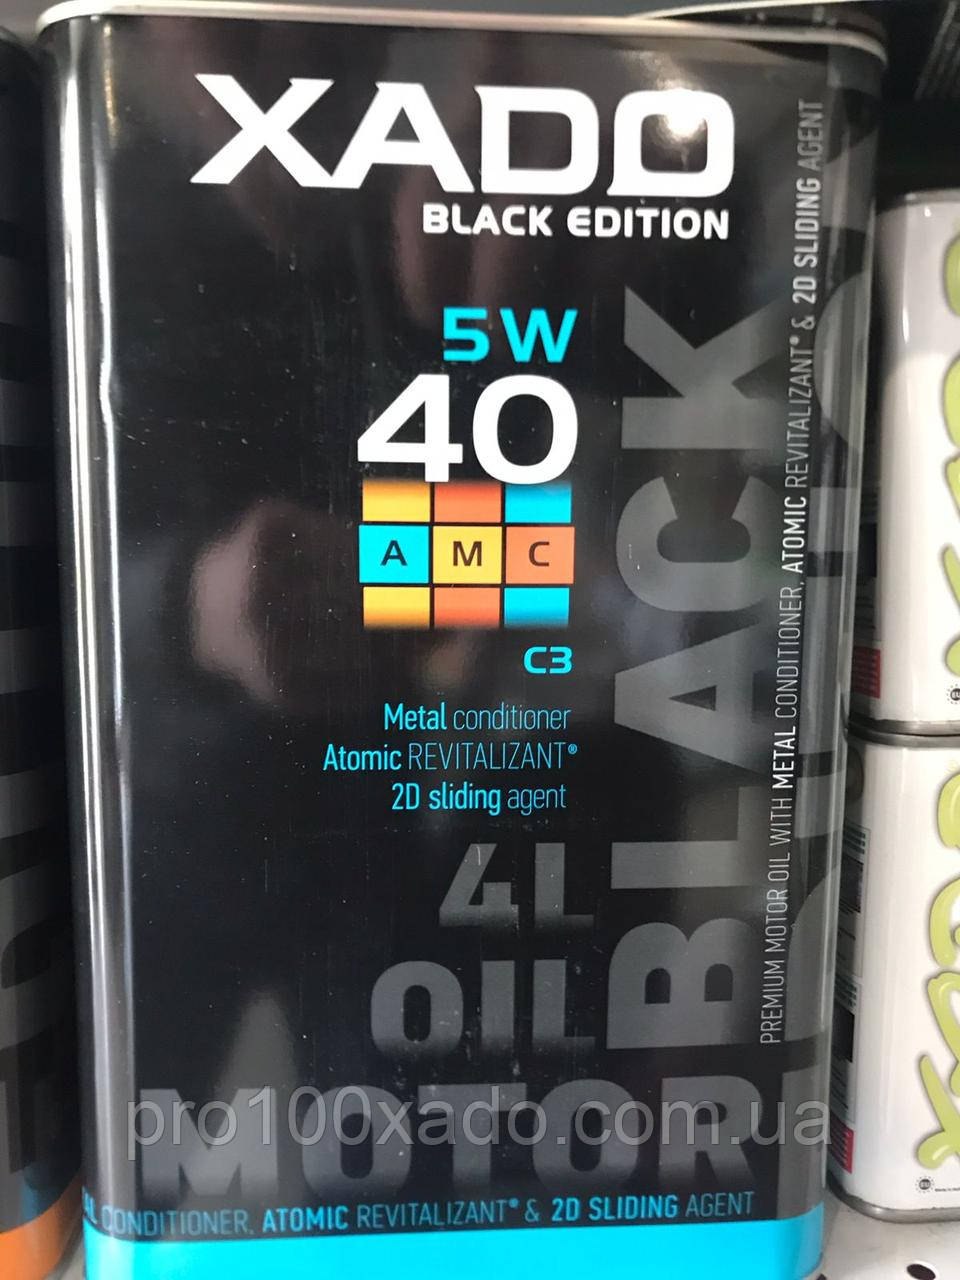 Хадо 5W-40 C3 АМС black edition (ж/б 4 л)